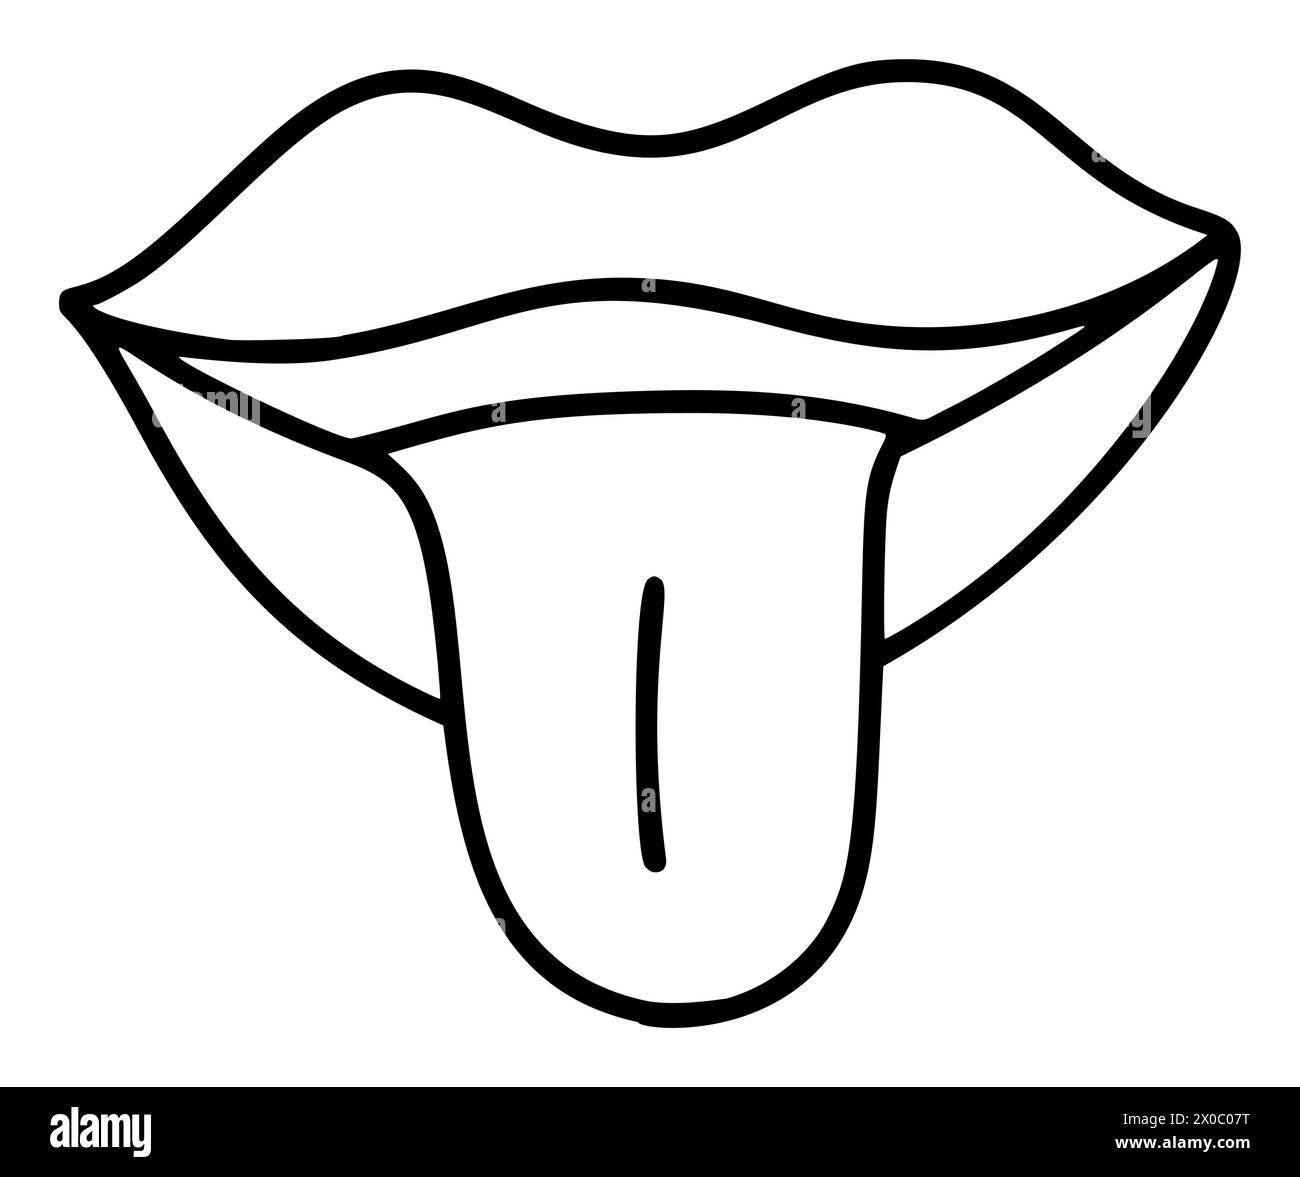 Handgezeichnete Lippen mit Zungensymbol im einfachen Doodle-Stil. Frauenmund mit Falten. Monochromes Design Stock Vektor